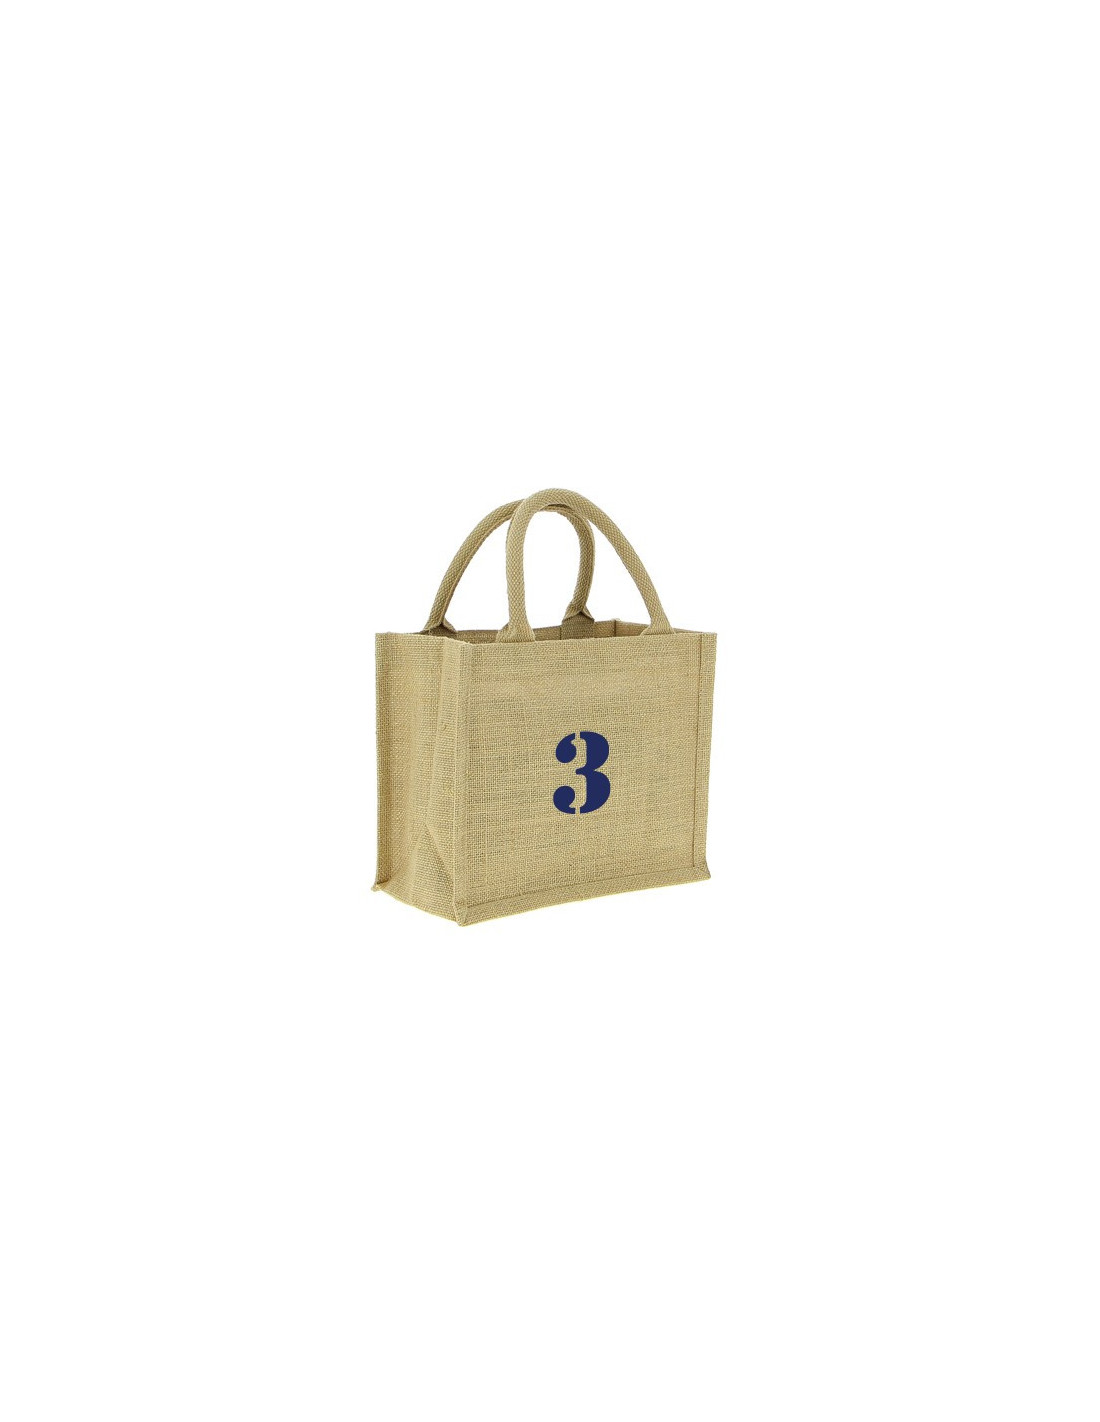 Cabas toile de jute et coton > sac cabas durable en toile de jute et coton  tous commerces tote bag personnalisable